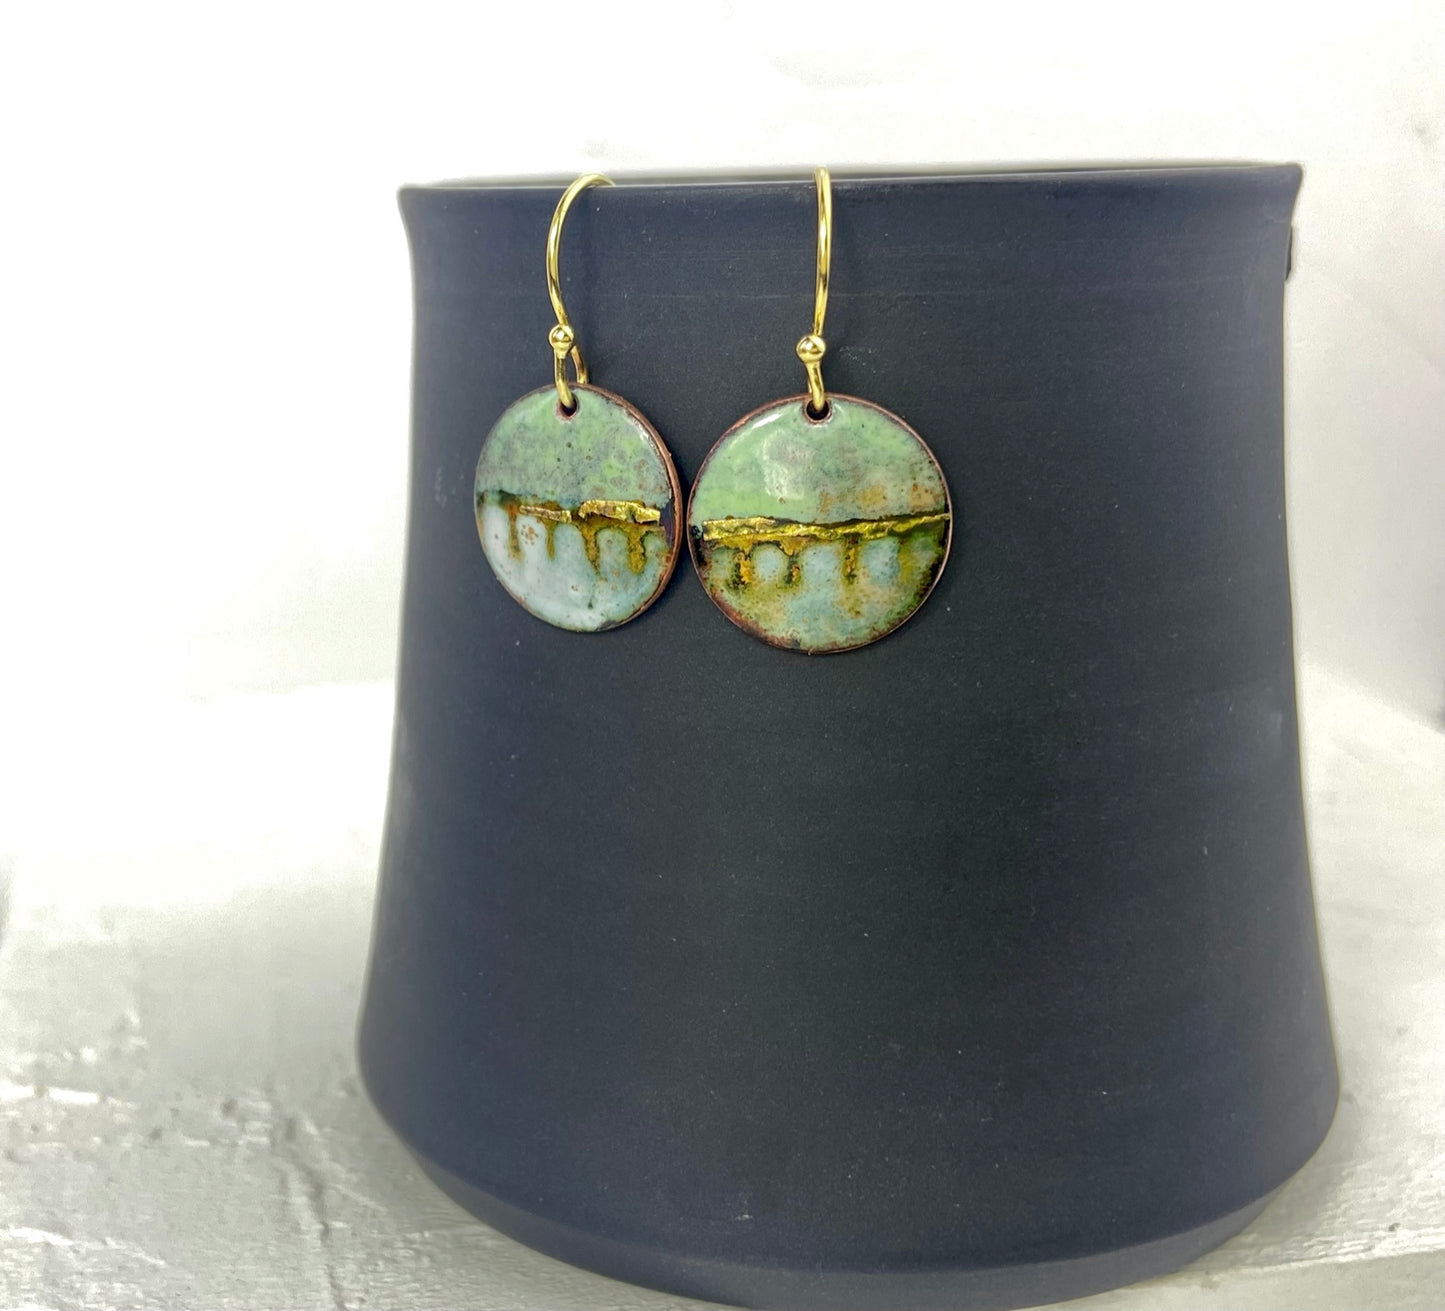 Landscape round enamel earrings - Green, blue or purple